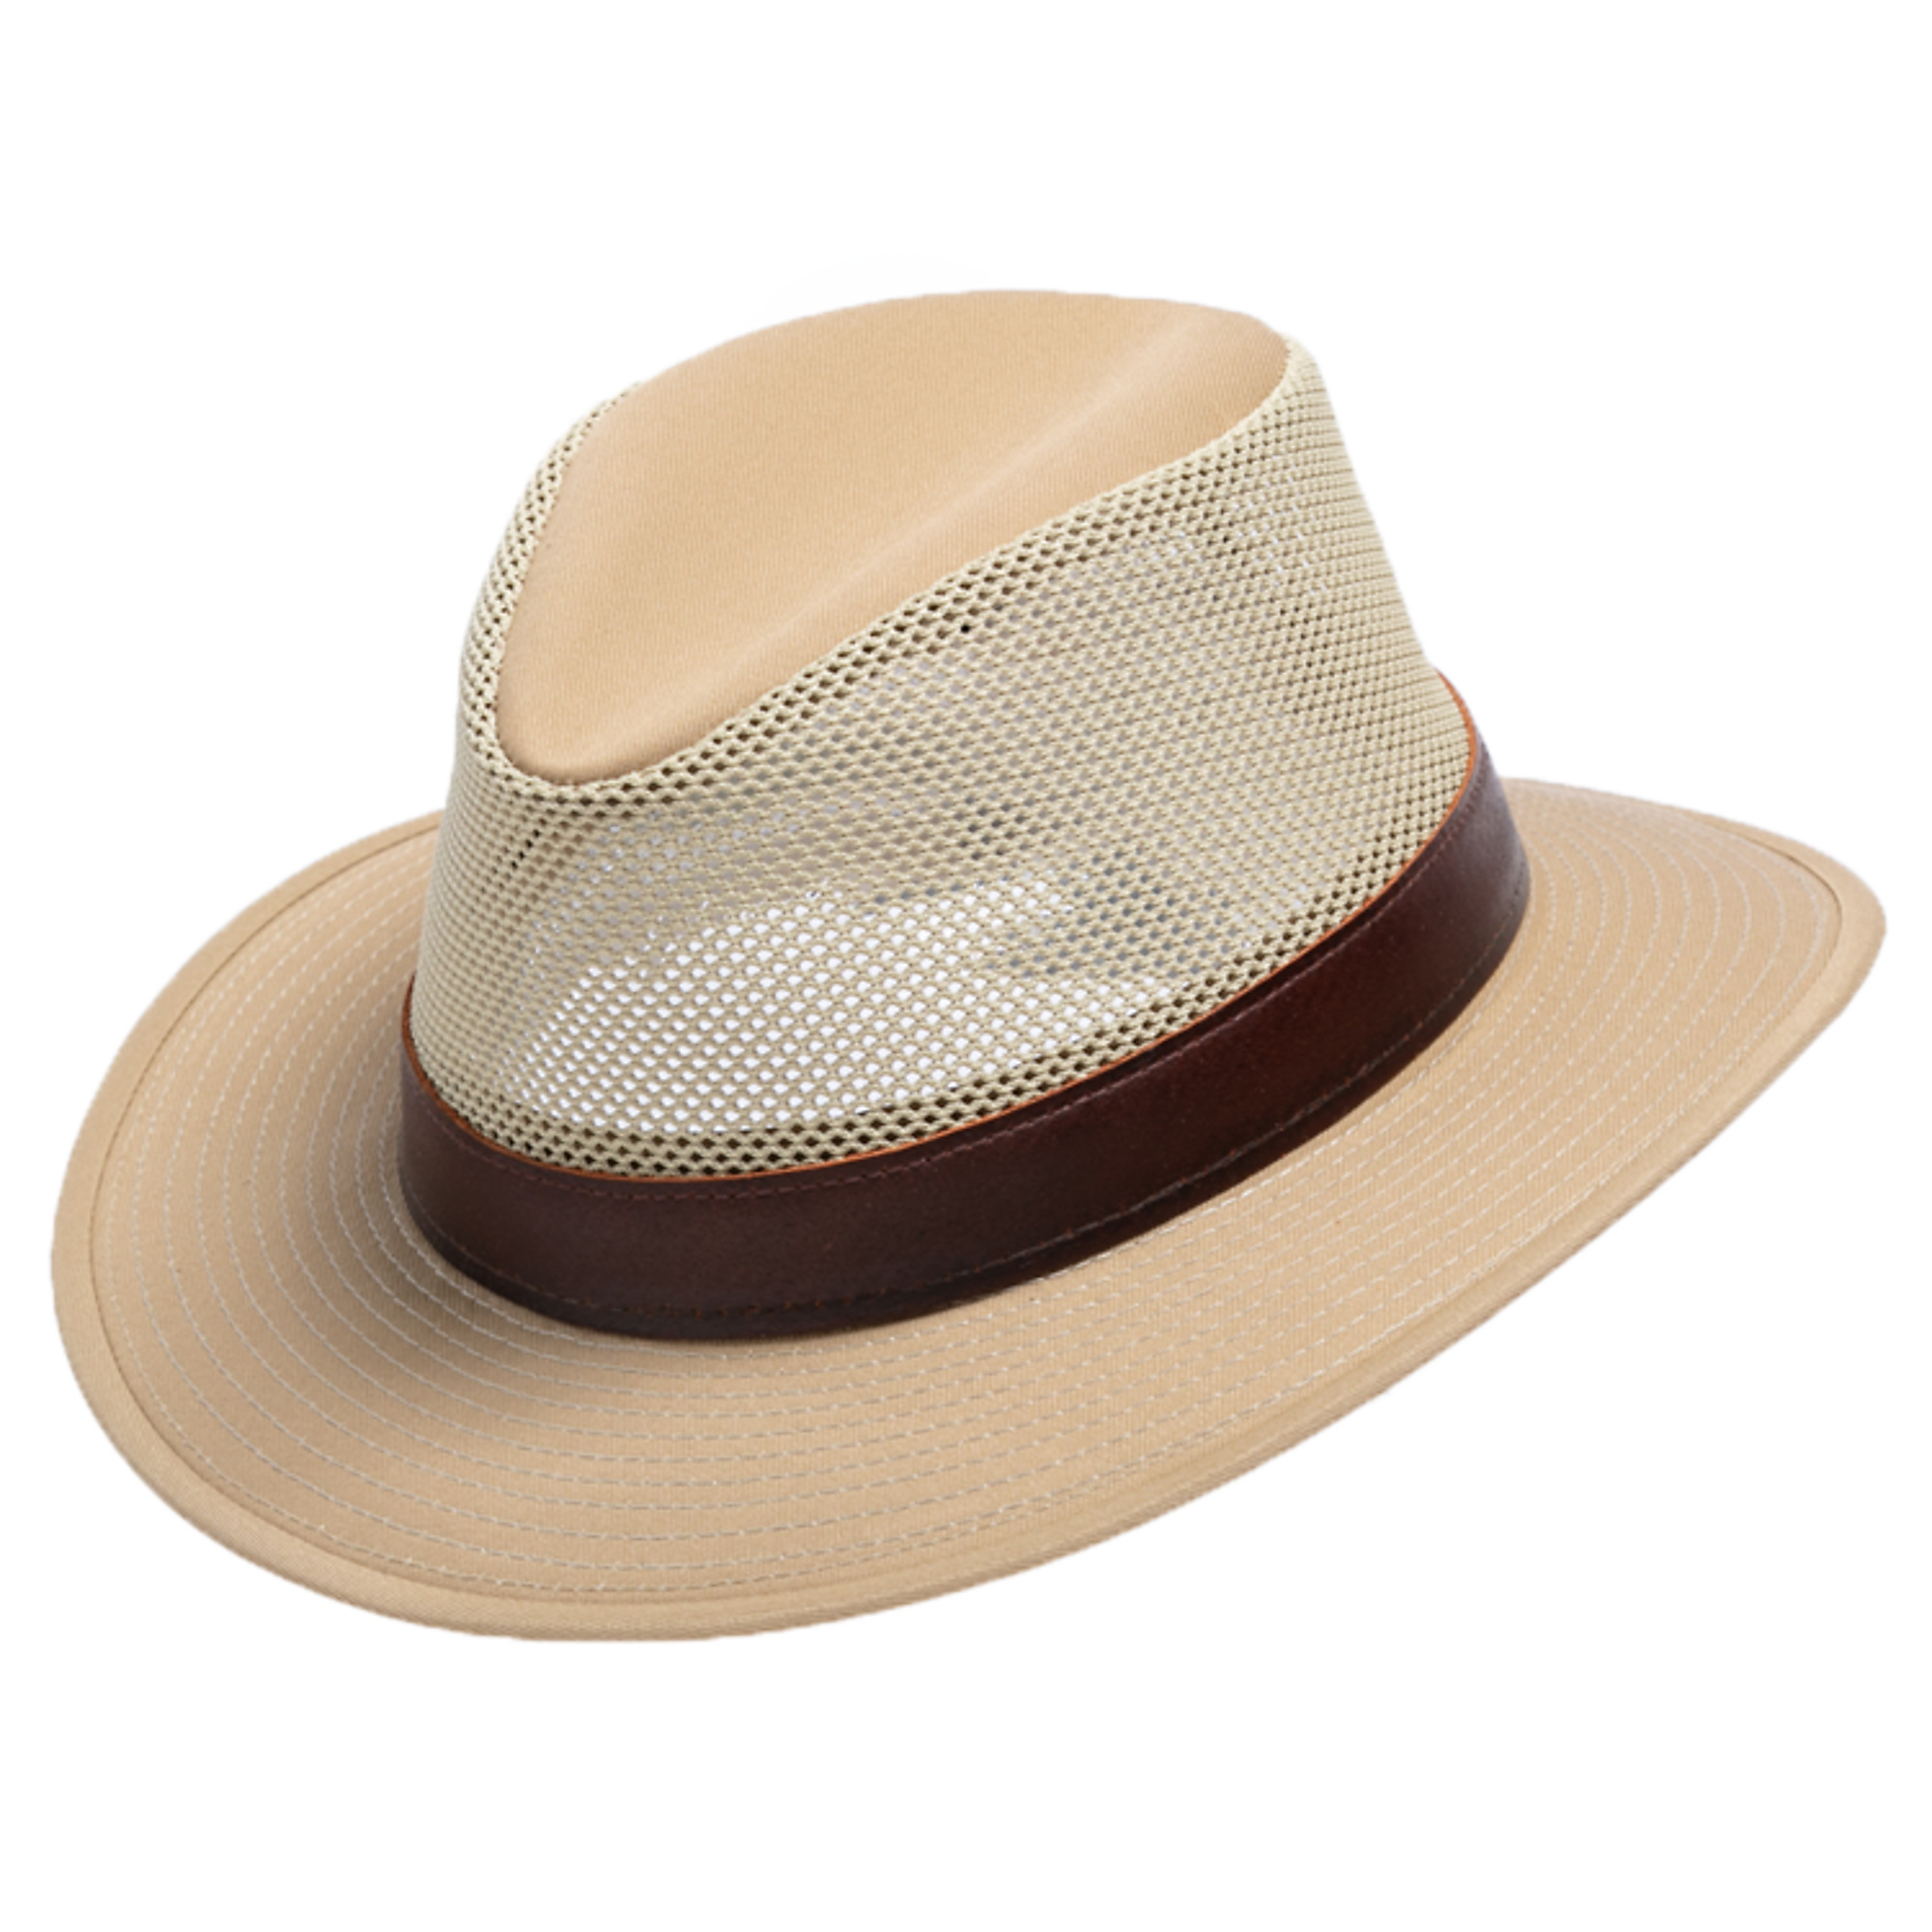 Henschel Hat Company, Khaki Tahoe Breezer, Size L, Color Khaki, Hat Style Hat, Model 3378-95L